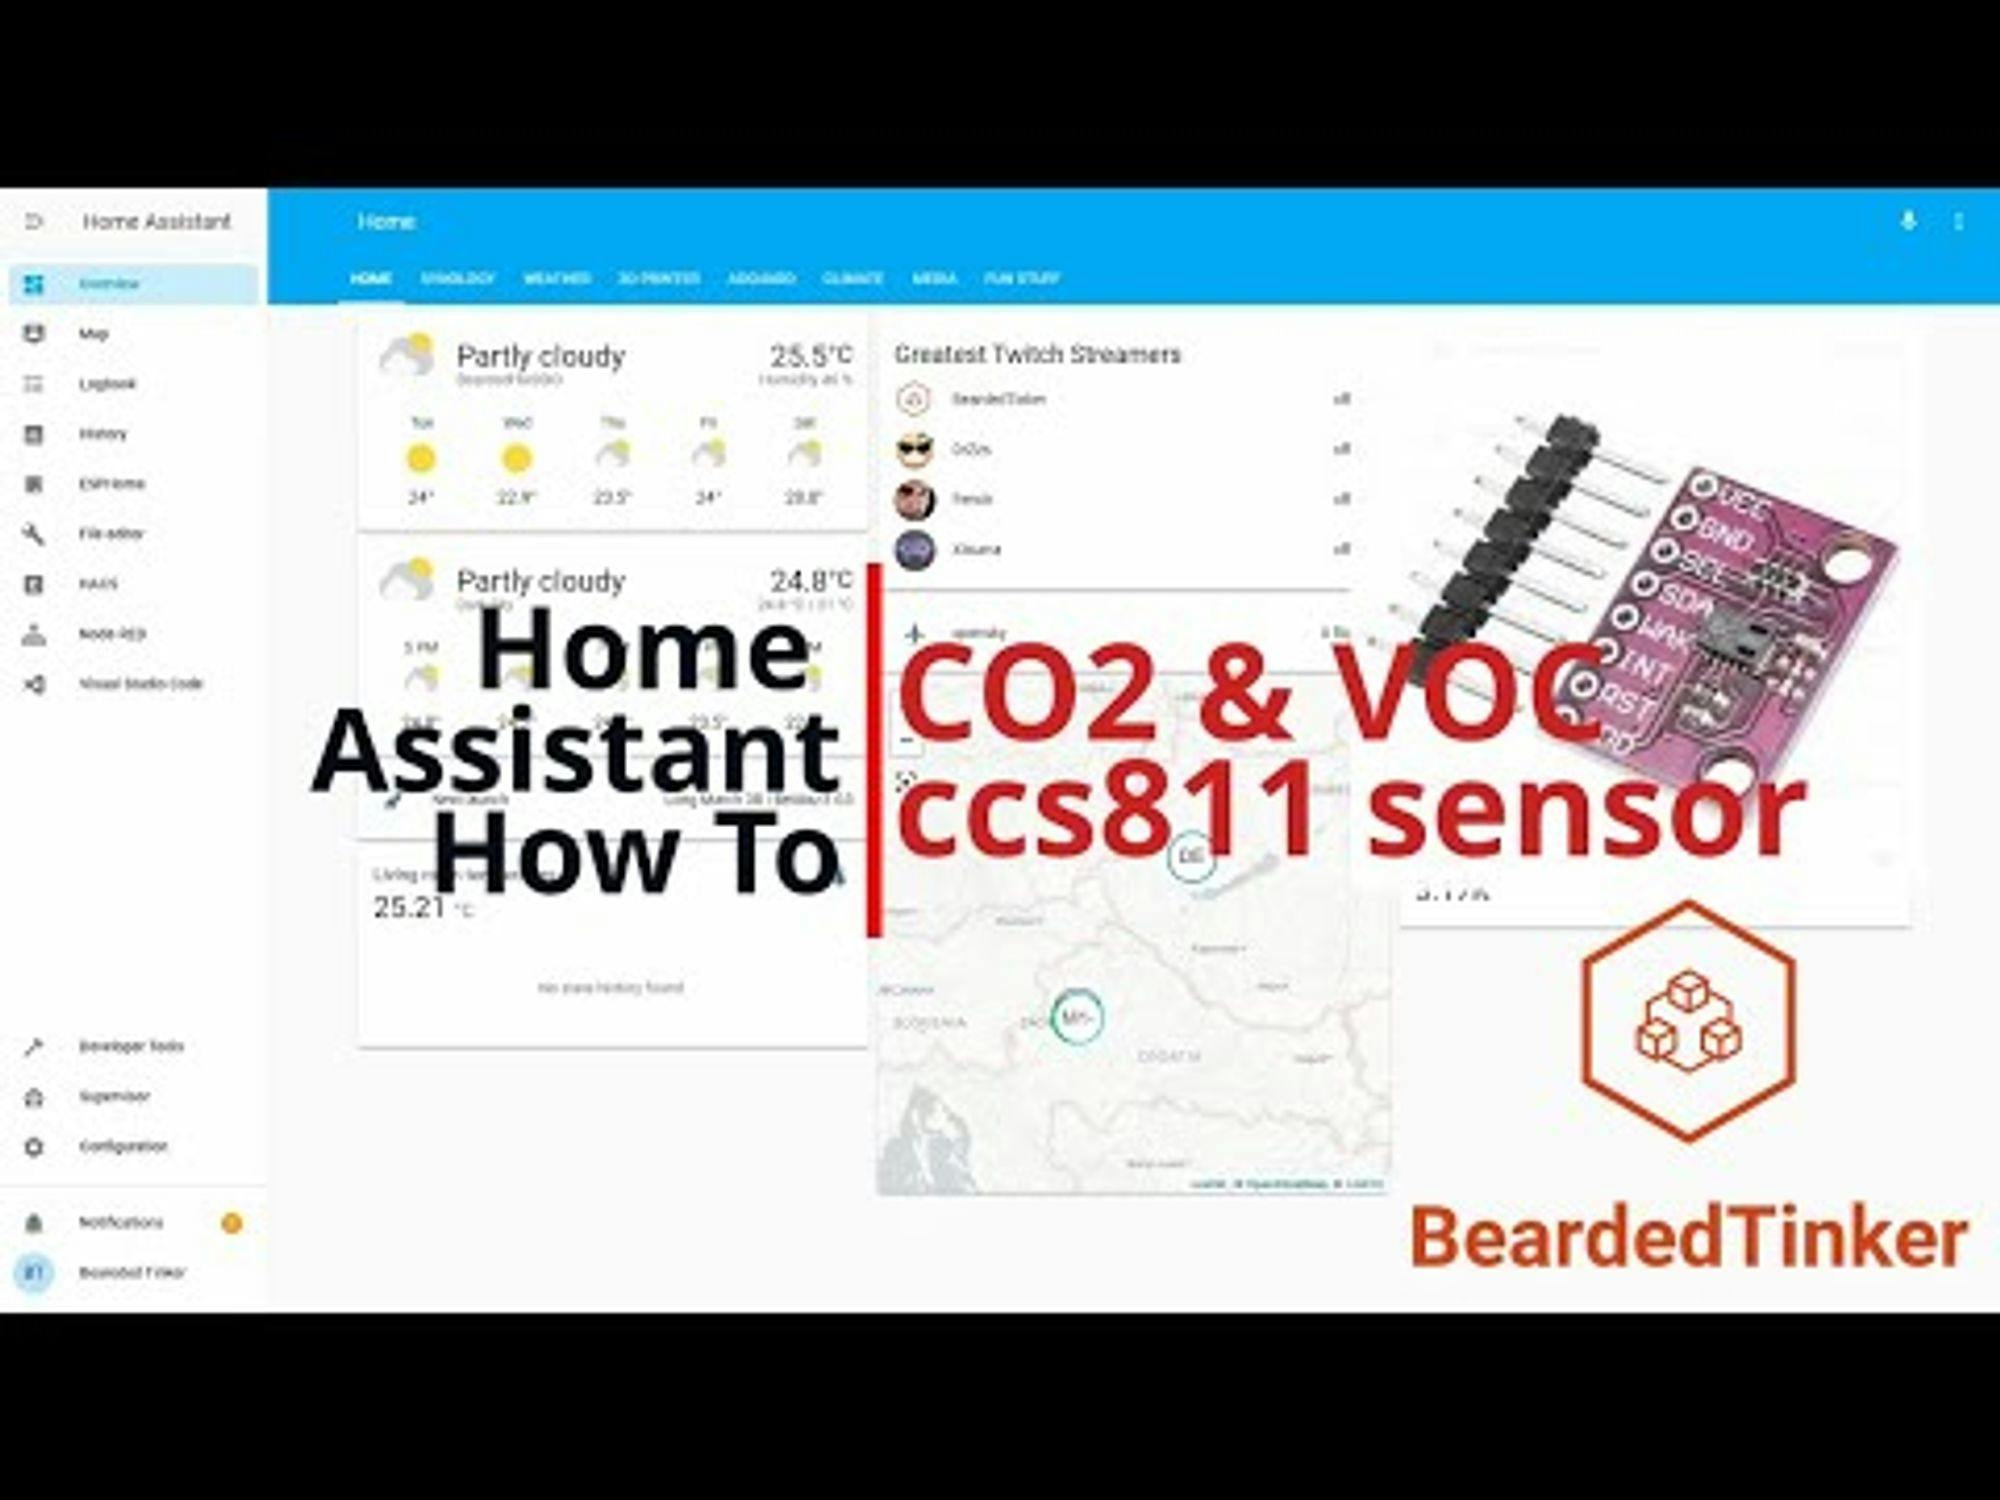 Home Assistant How To - eCO2 and VOC ccs811 sensor